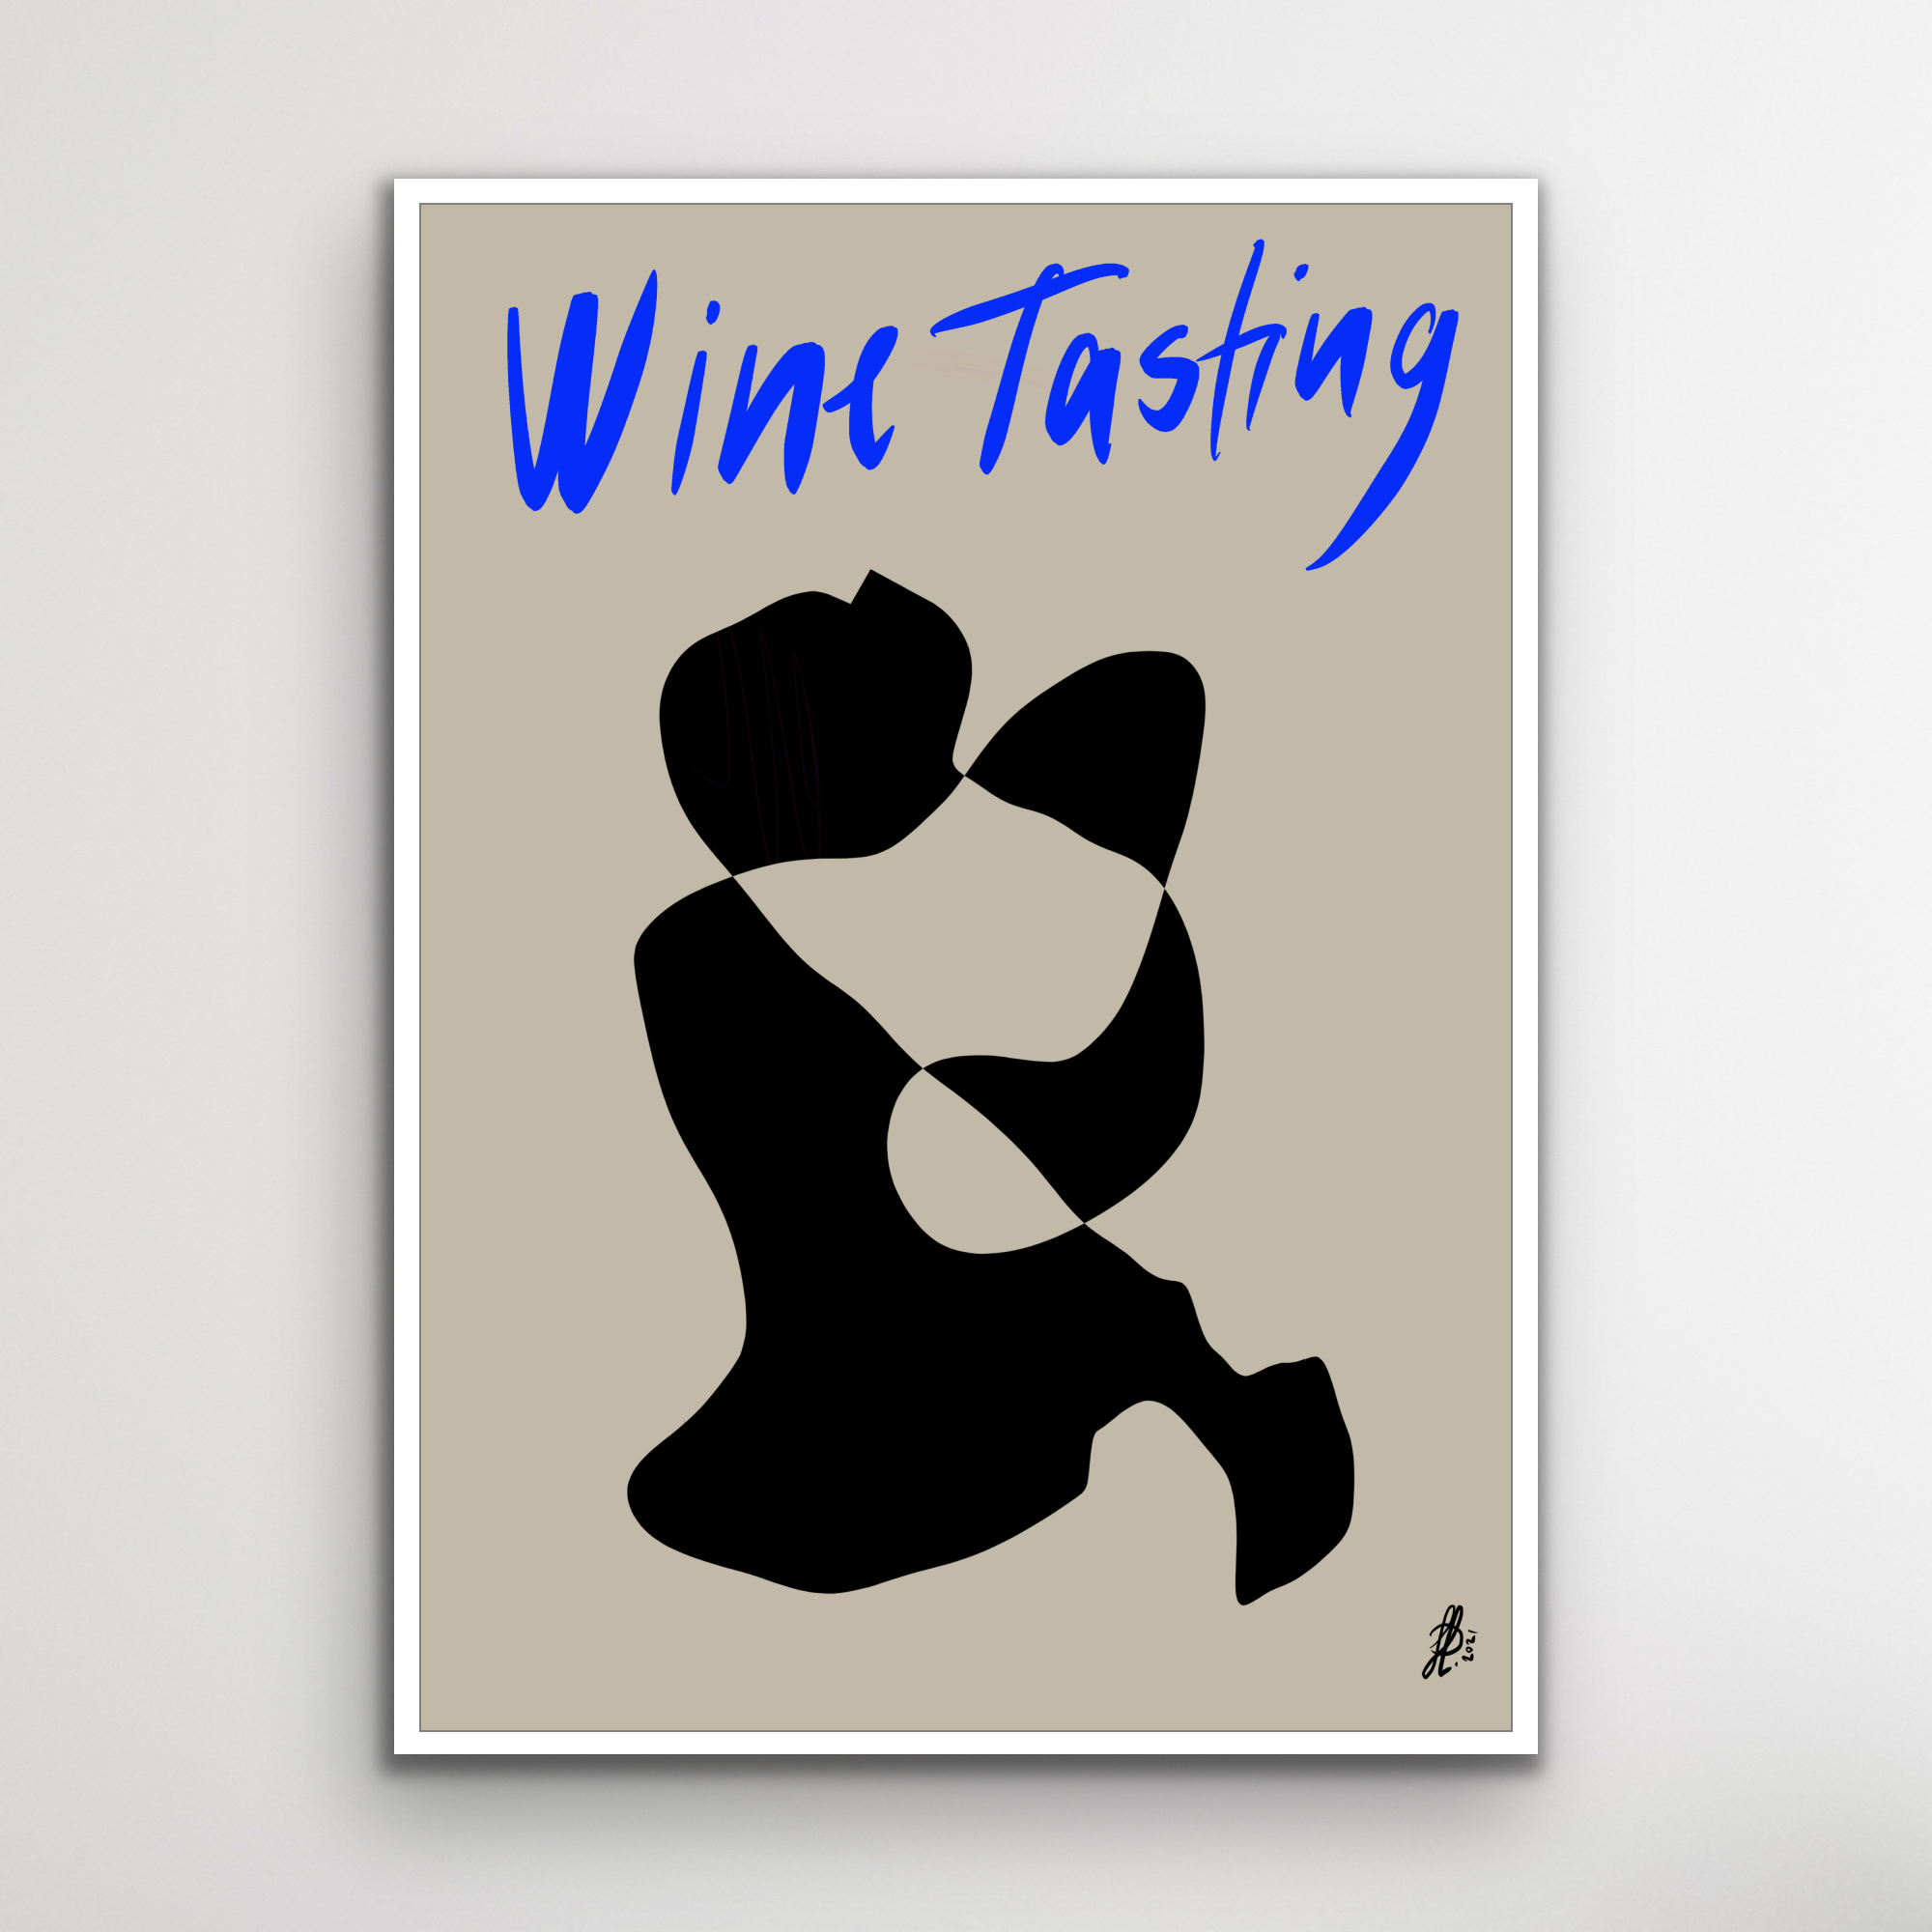 Canvas Print: "Wine Tasting #1"